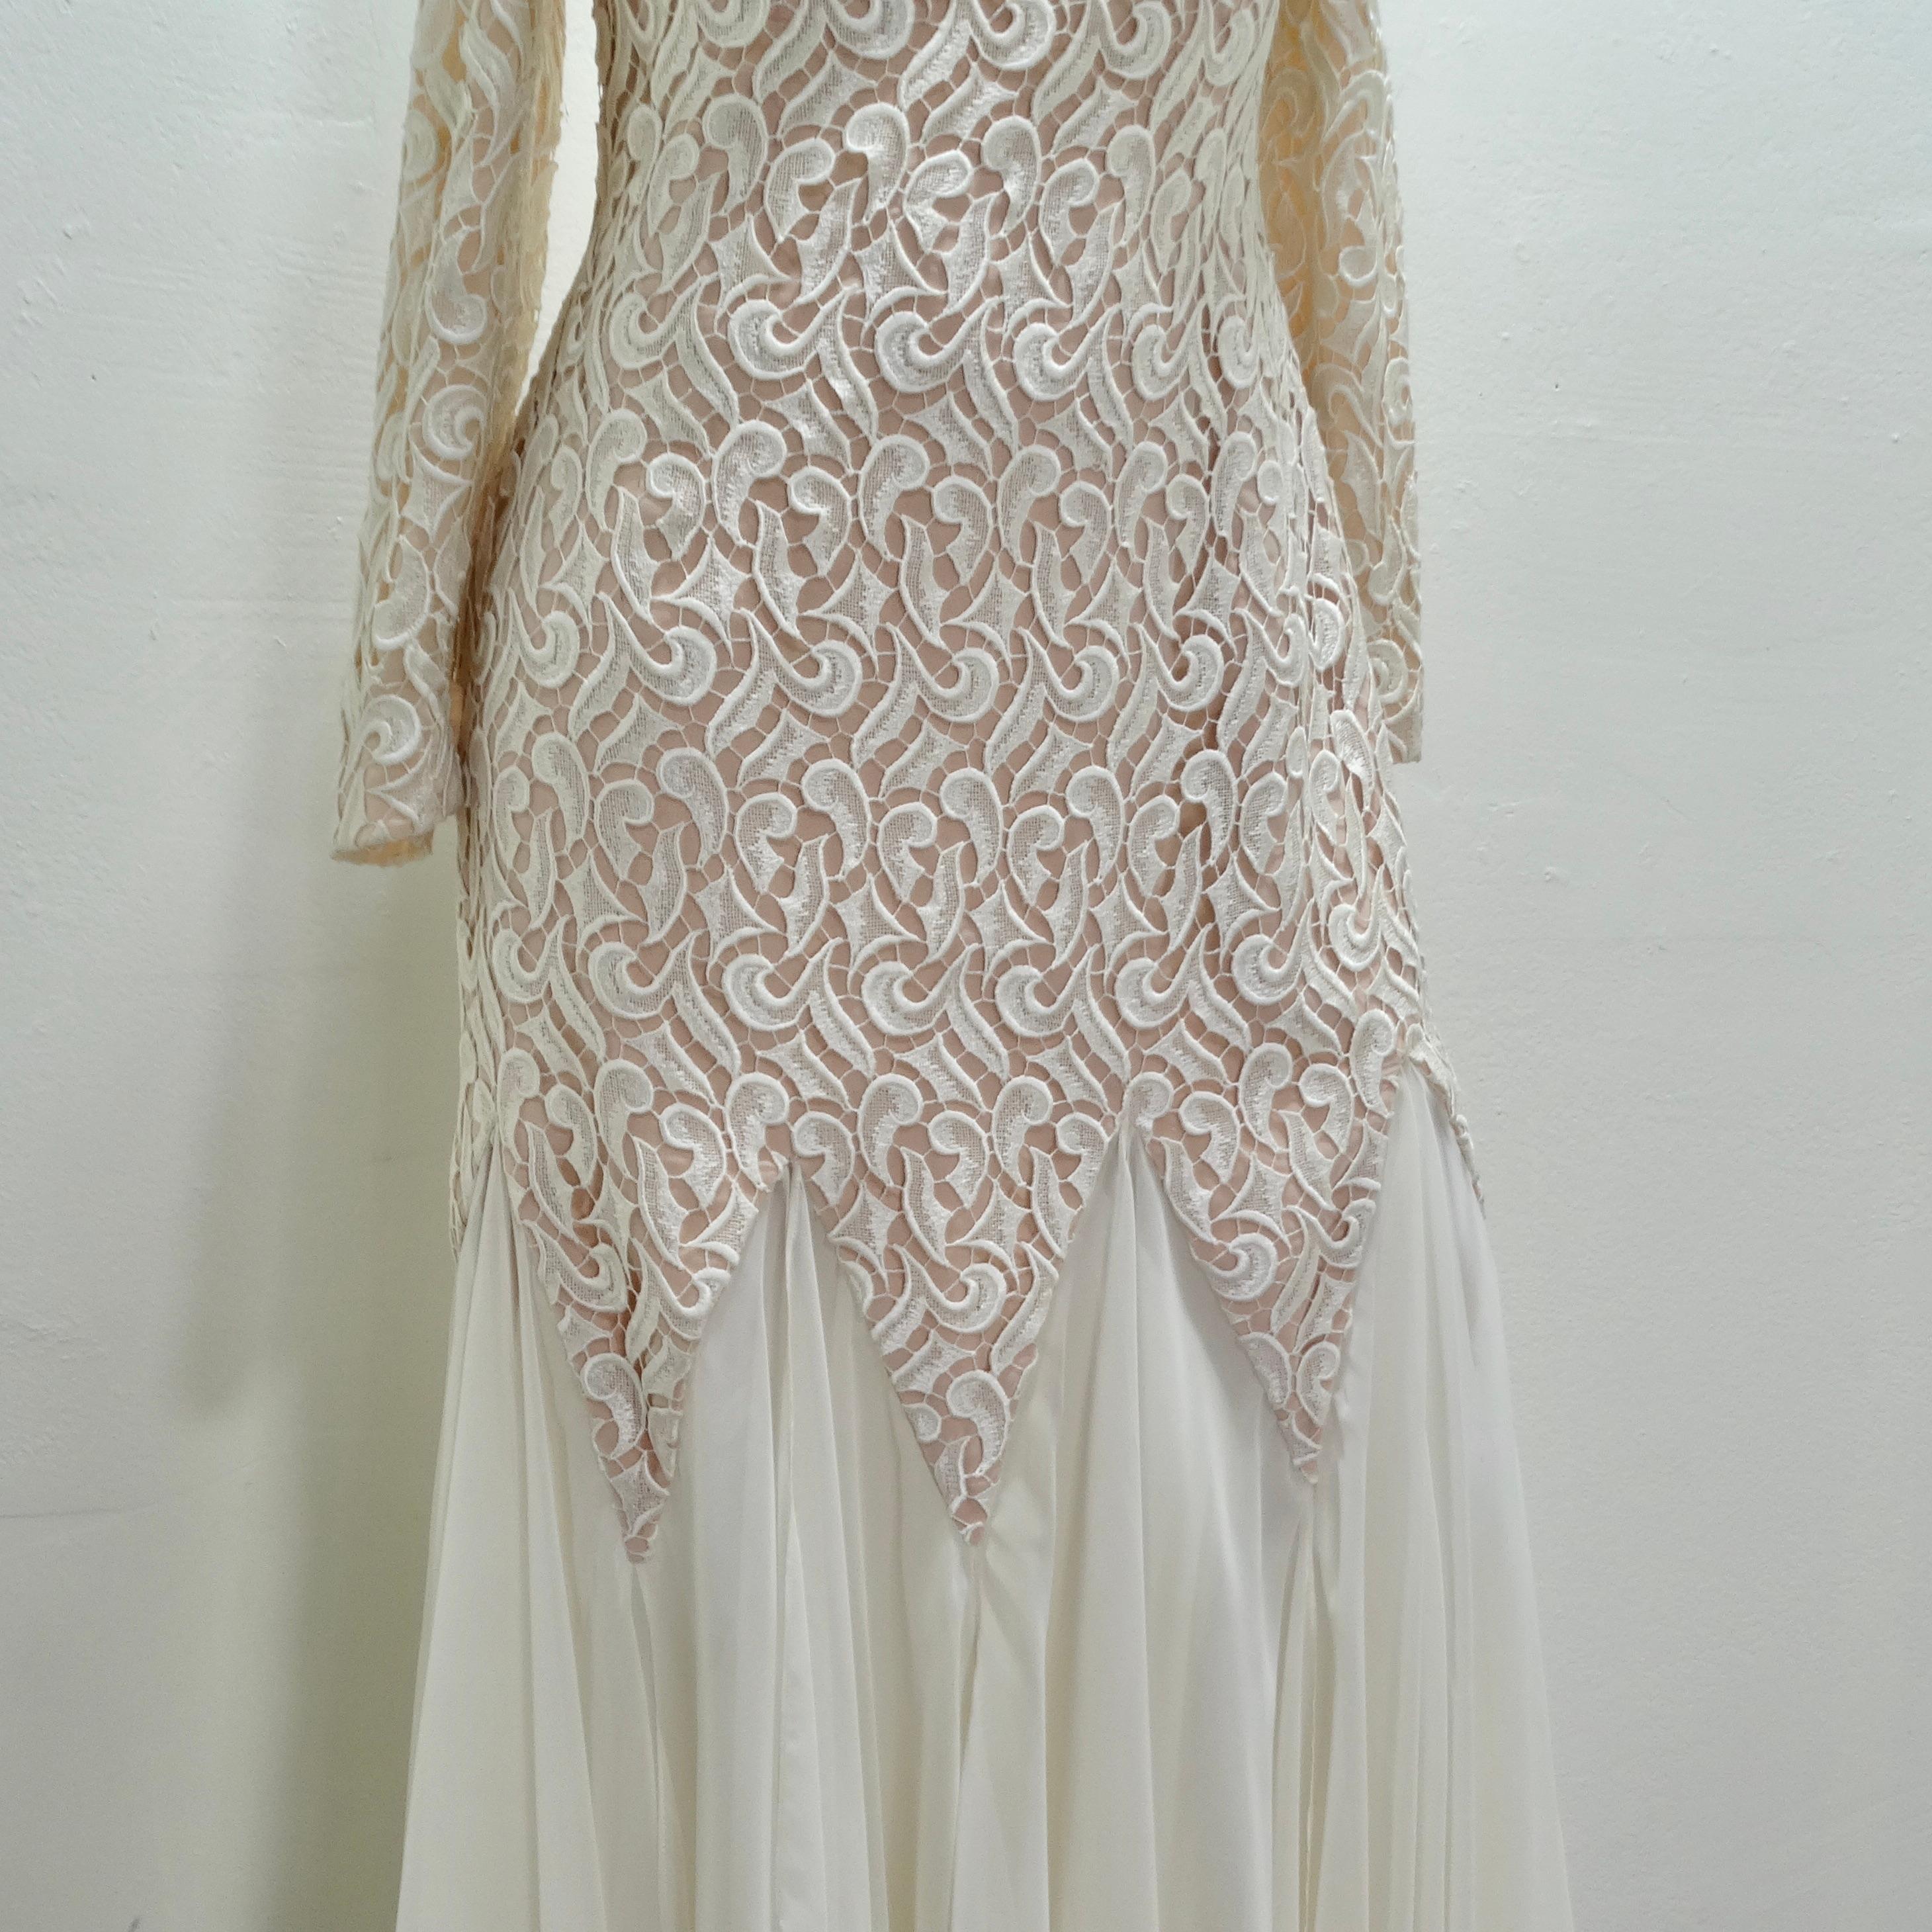 Voici la robe de mariée en dentelle blanche Travilla des années 1980 - un véritable chef-d'œuvre de la mode nuptiale qui capture l'essence de l'élégance intemporelle avec une touche contemporaine. Cette magnifique robe de style sirène avec longueur